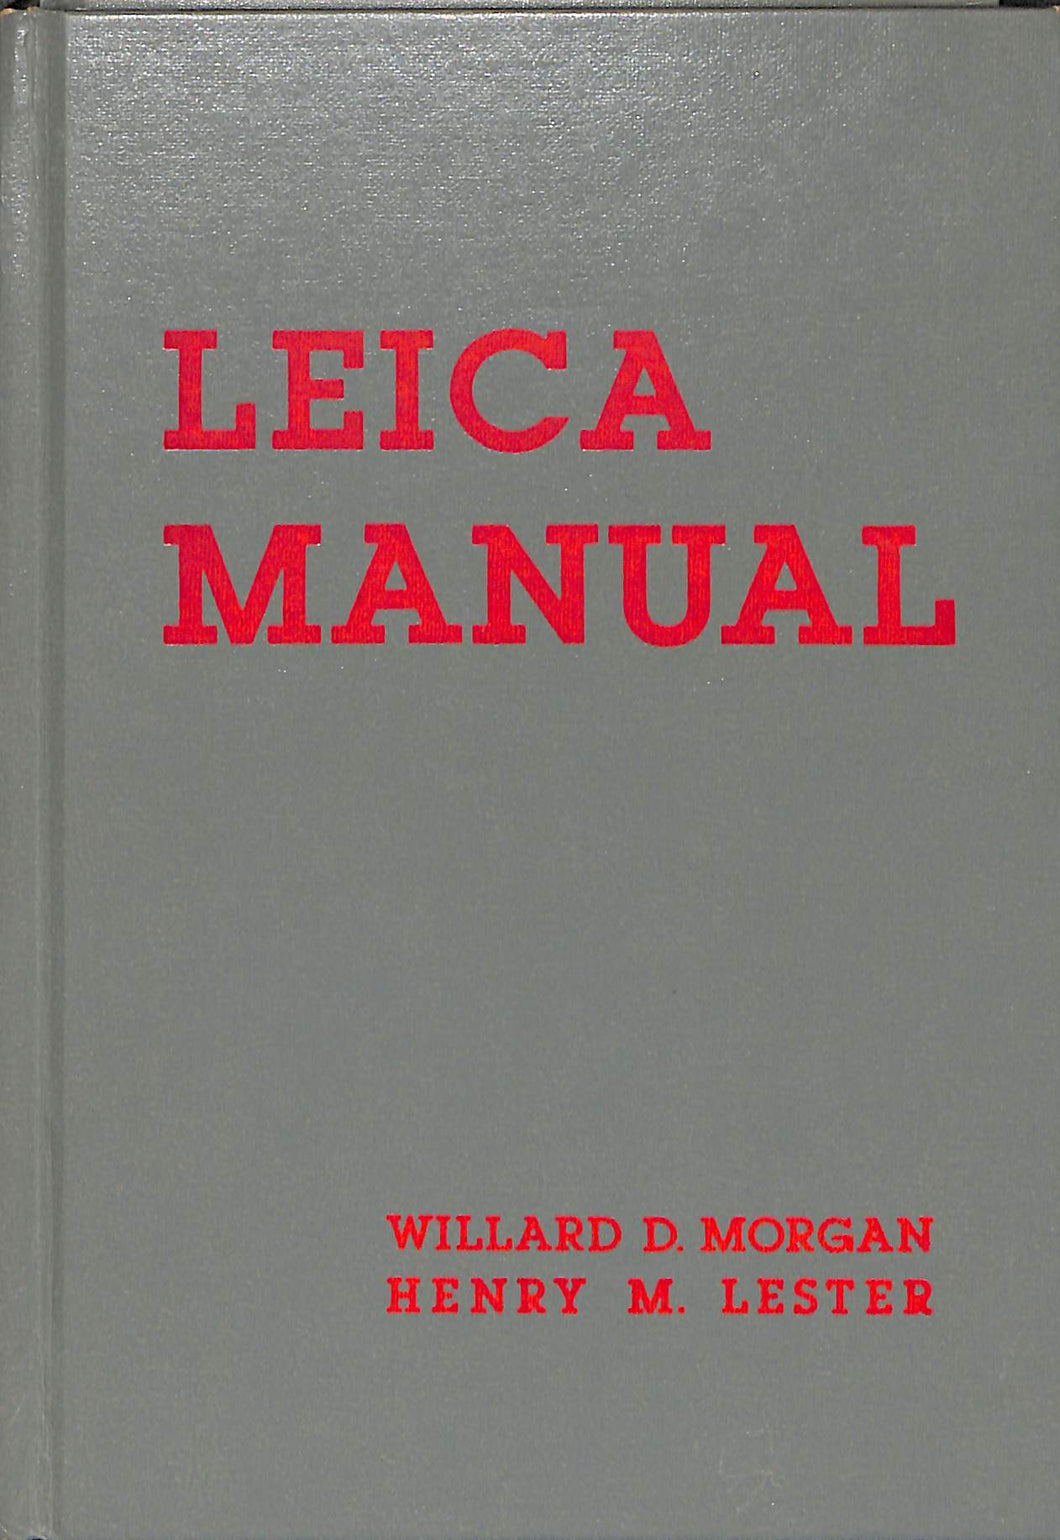 【洋書】LEICA MANUAL by Willard D. Morgan, Henry M. Lester (ライカ・マニュアル)